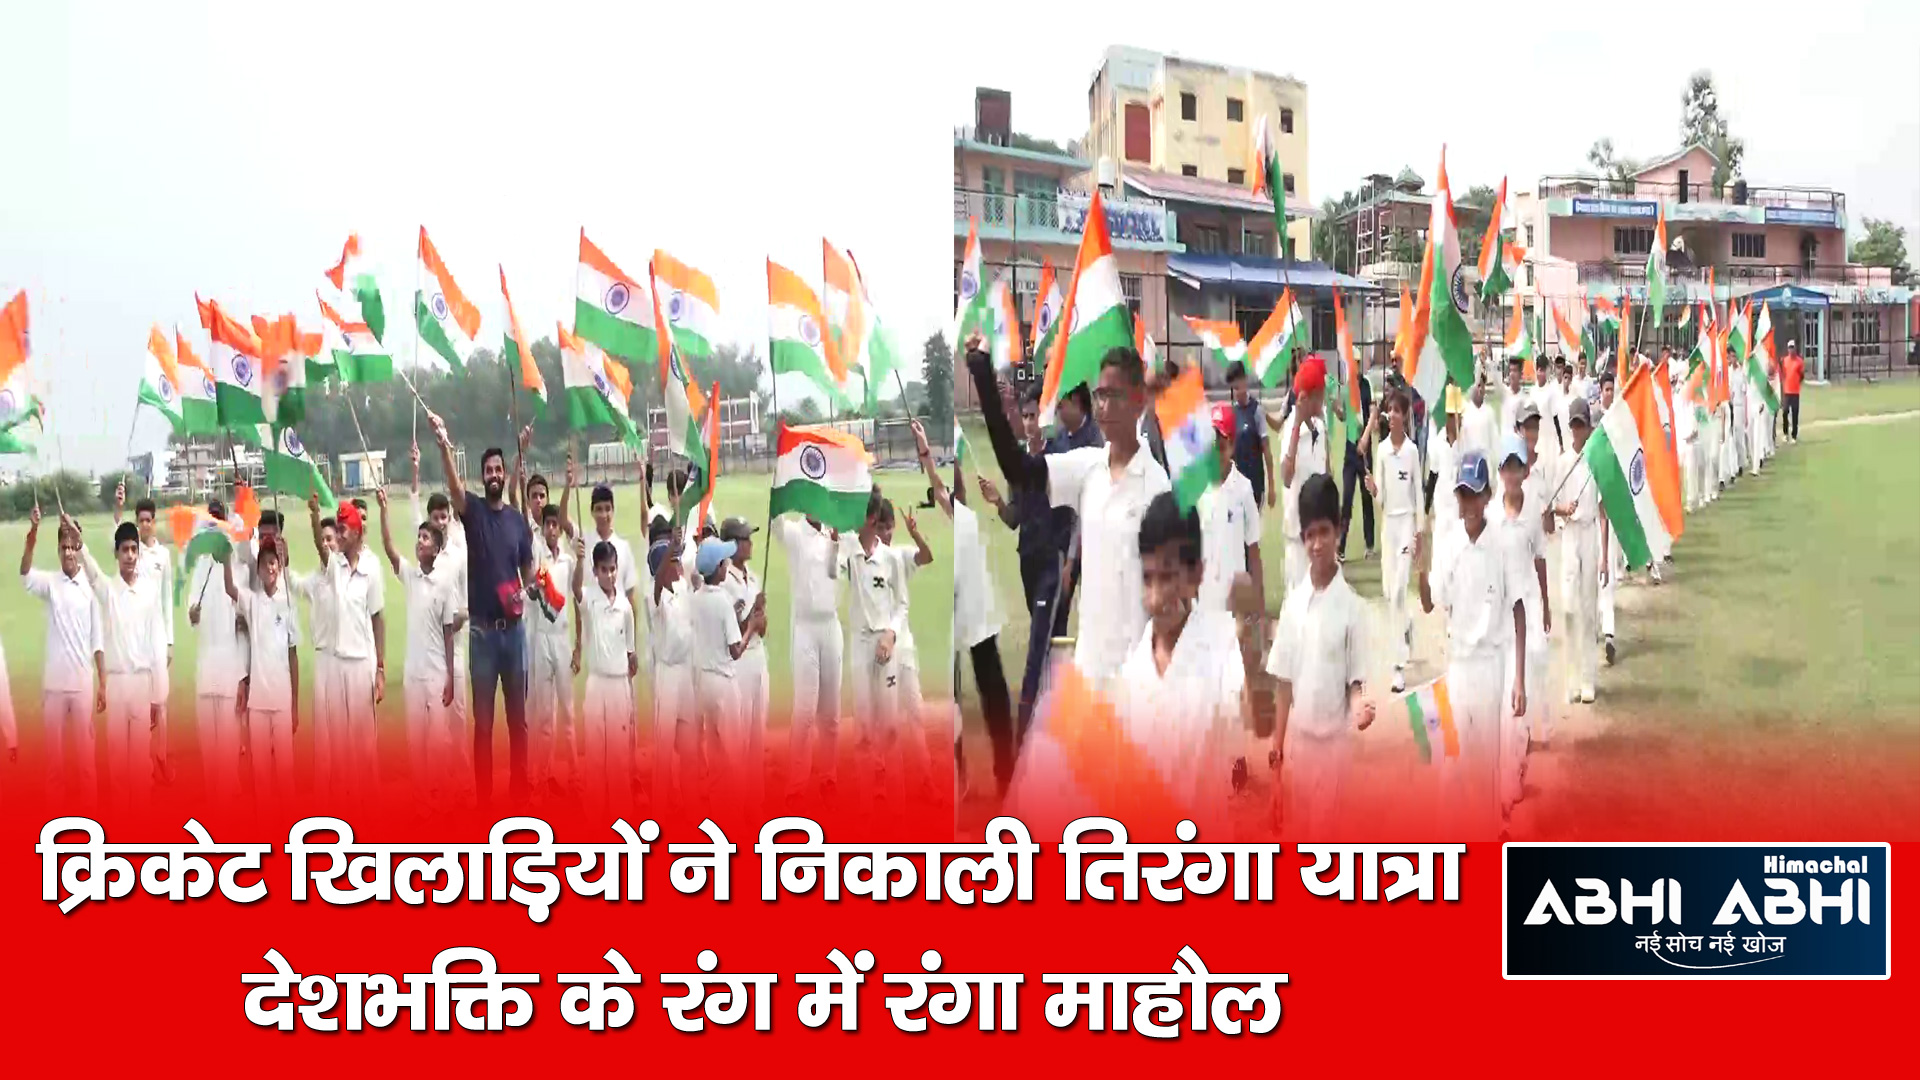 क्रिकेट खिलाड़ियों ने निकाली तिरंगा यात्रा, देशभक्ति के रंग में रंगा माहौल